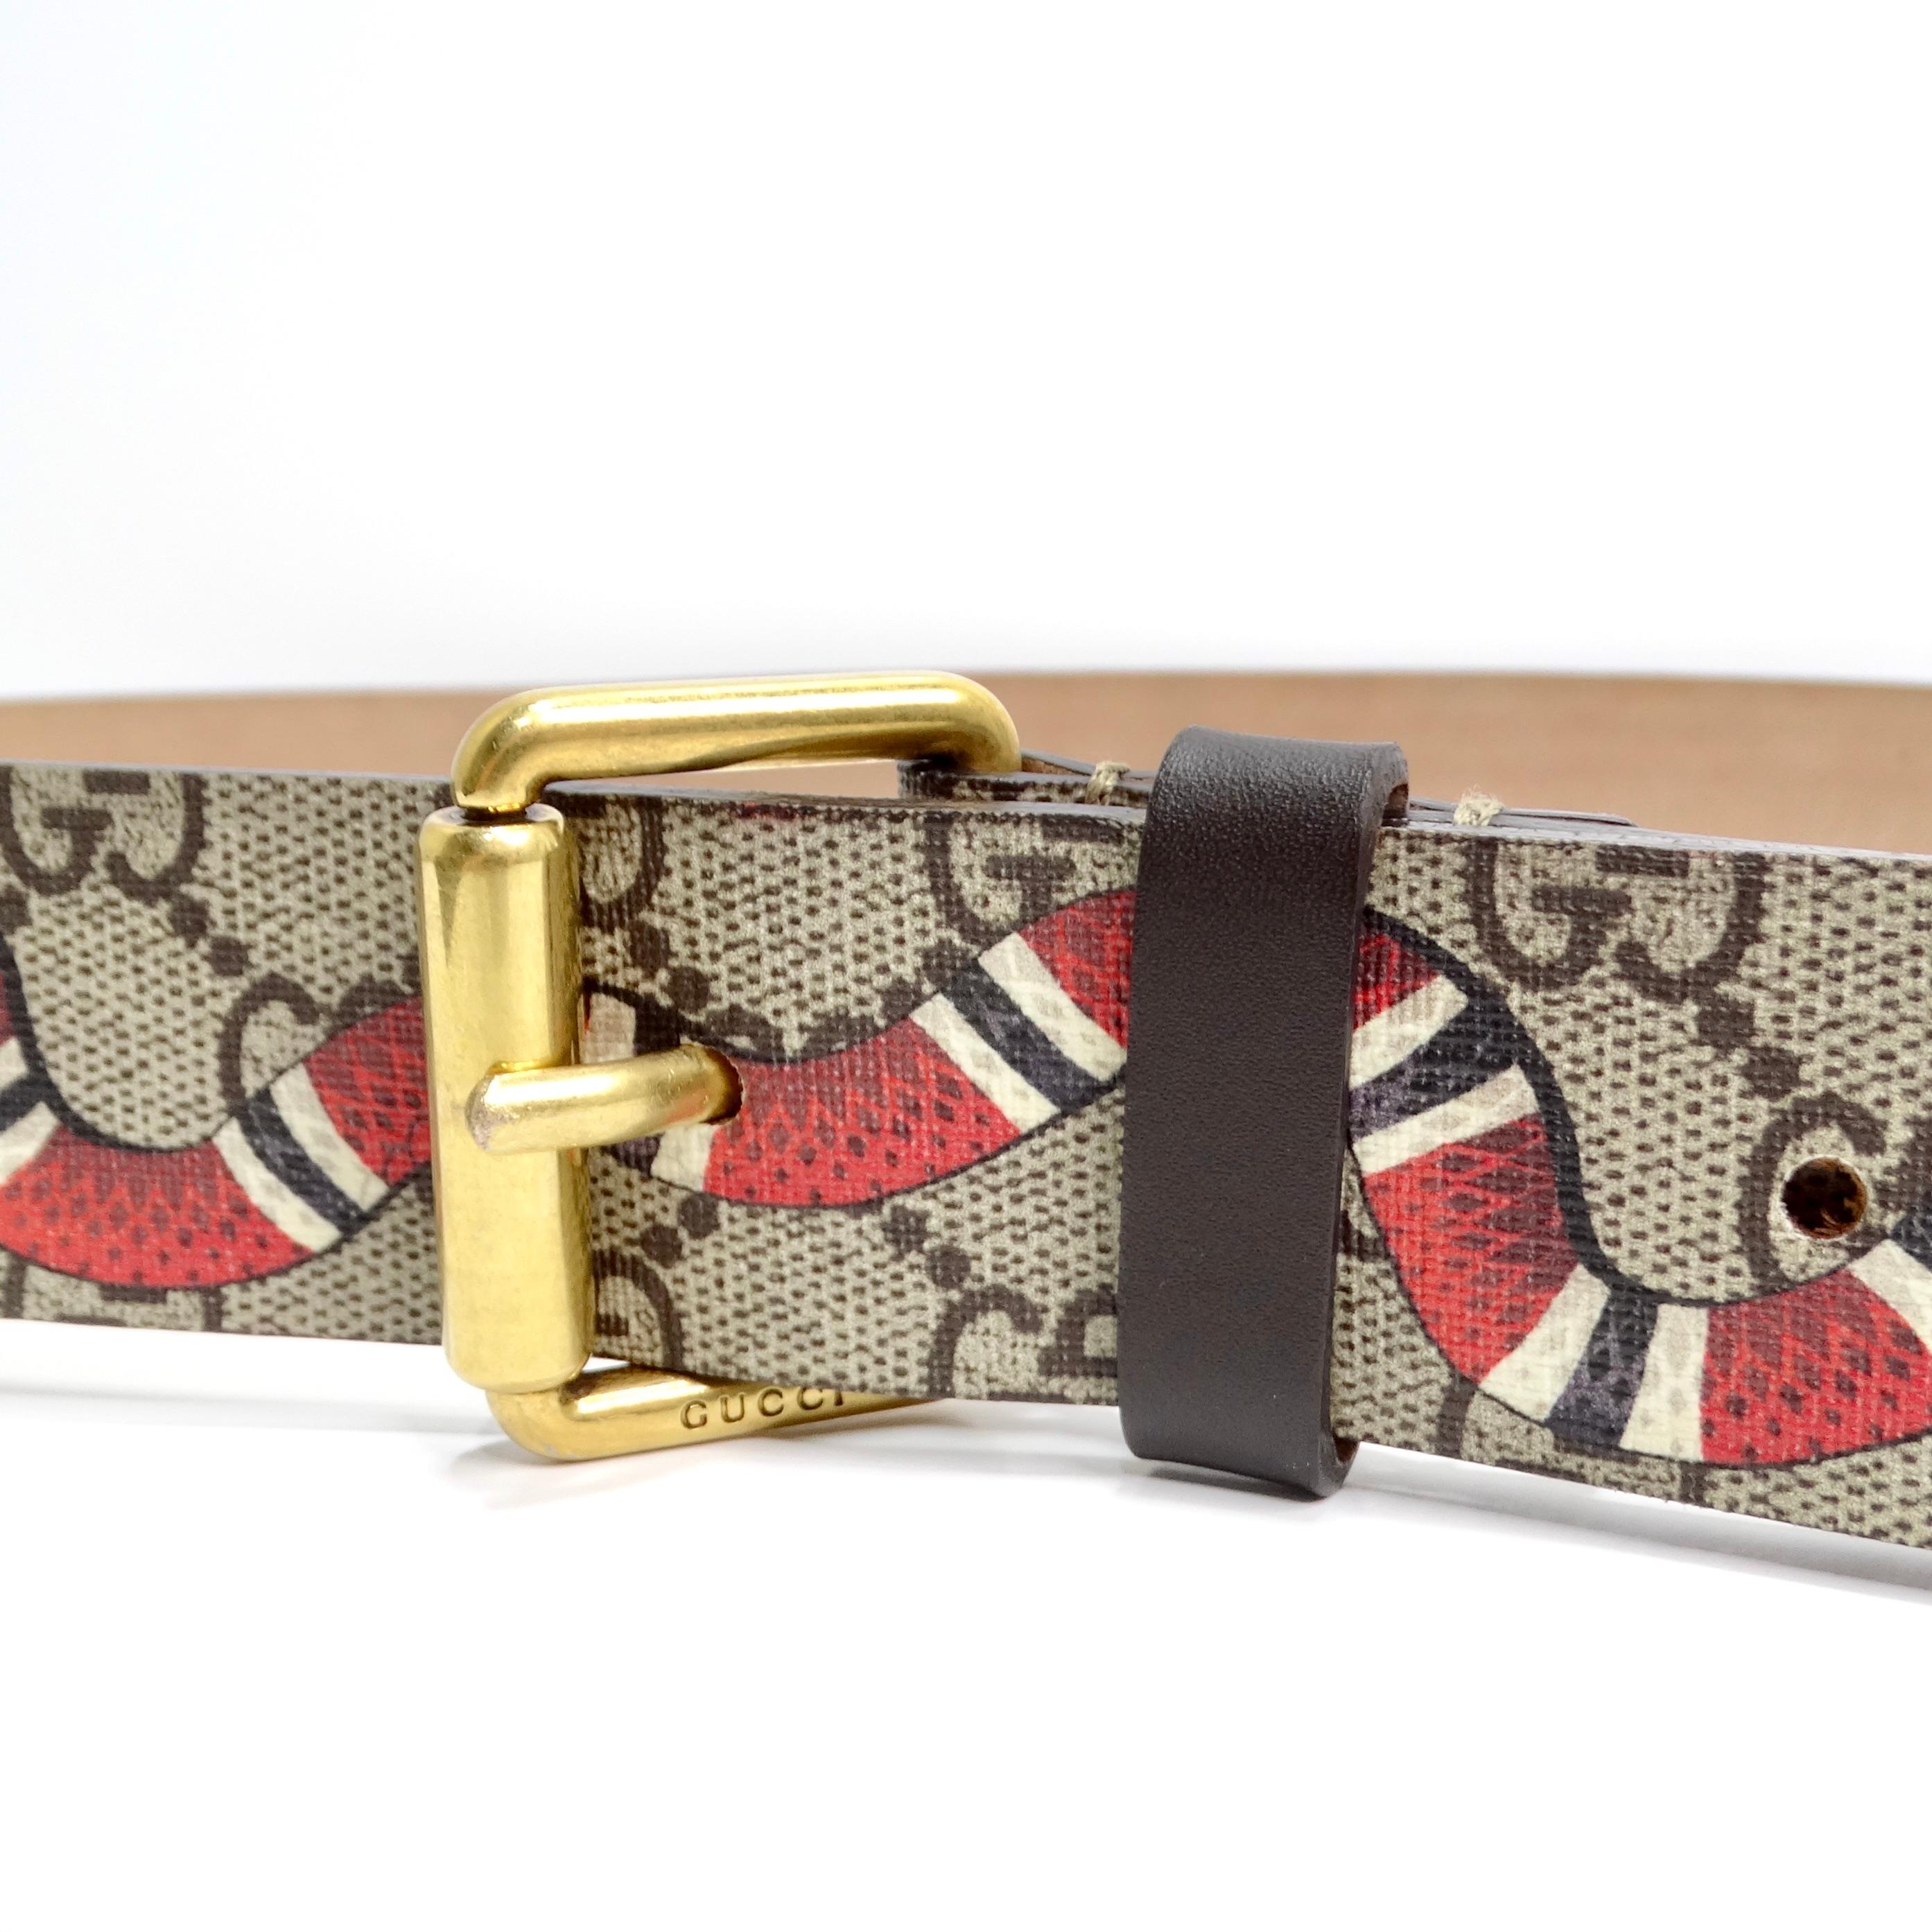 Der Gucci Monogram Snake Belt für Herren ist ein kühnes und stilvolles Accessoire, das mühelos klassisches Design mit modernem Flair verbindet. Dieser Gürtel zeigt das ikonische Gucci Monogram Canvas, das für seine zeitlose Anziehungskraft und